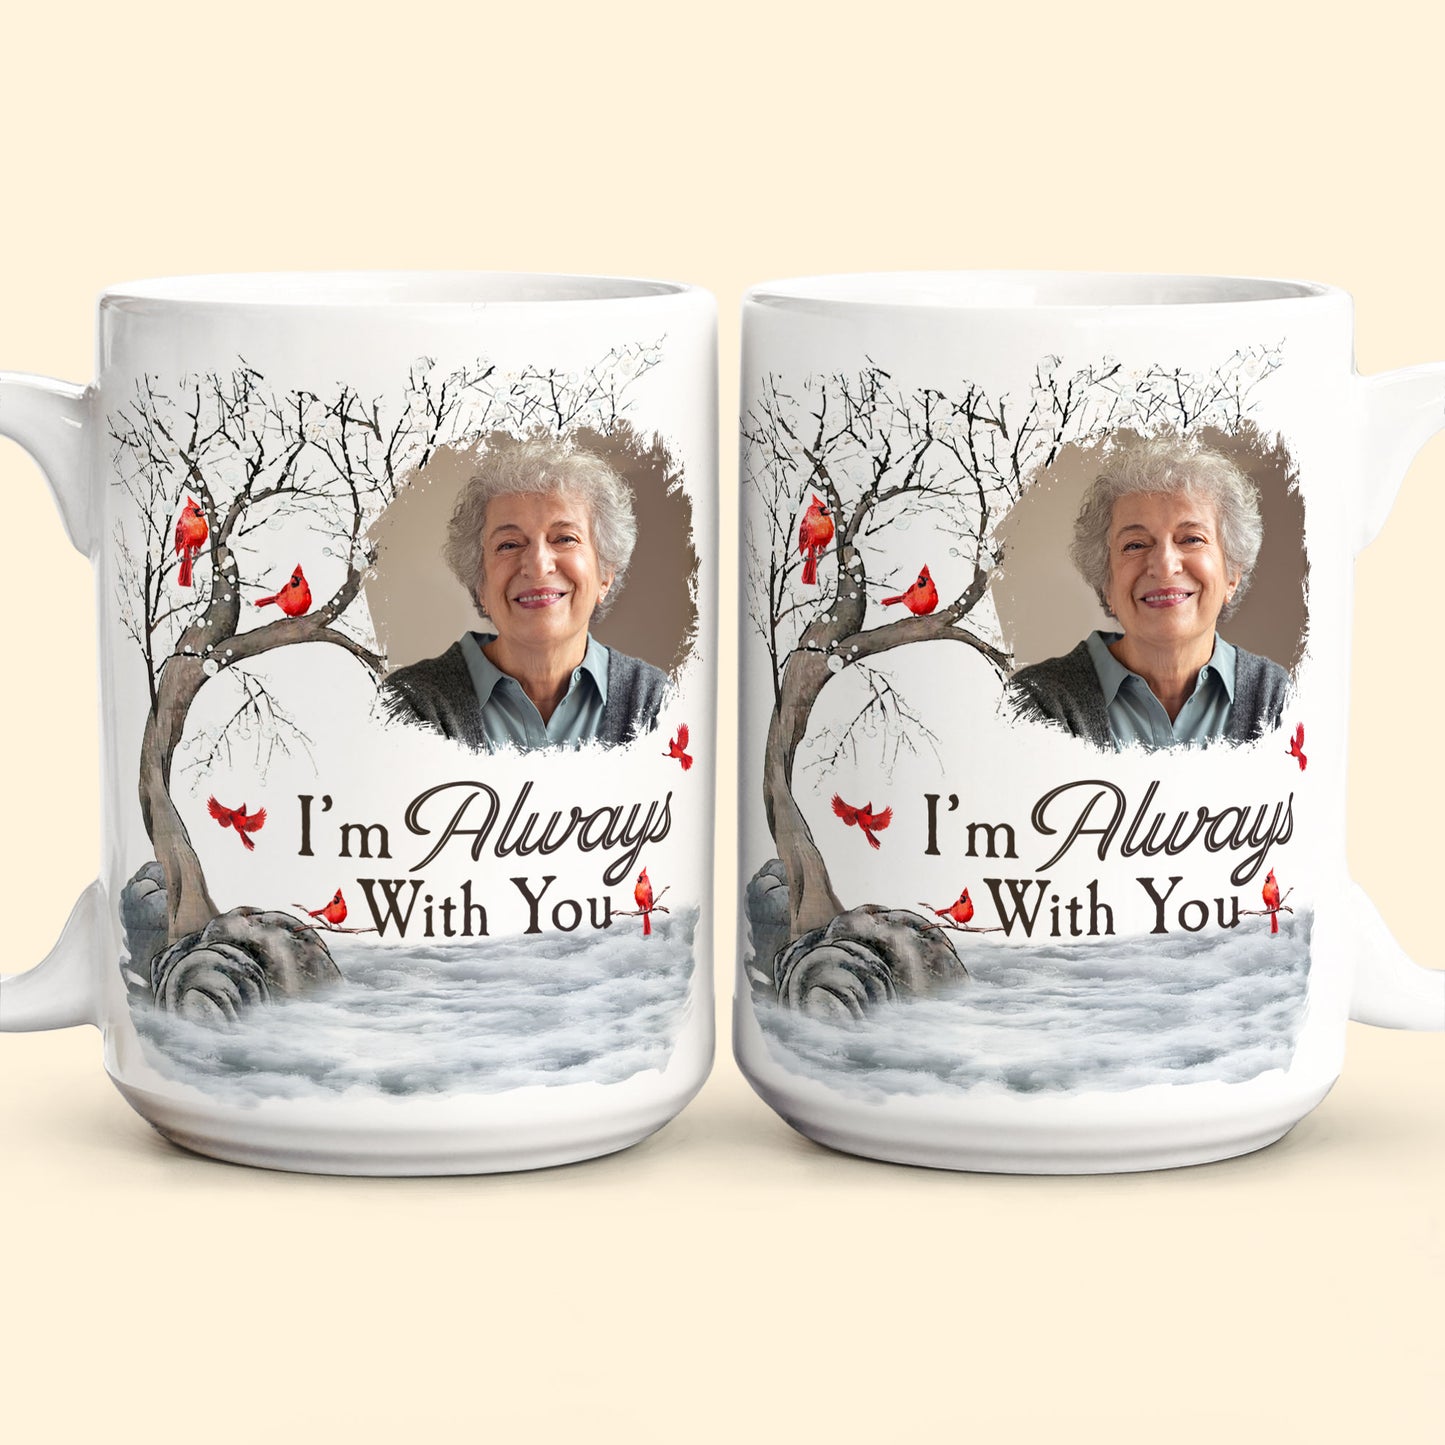 I'm Always With You - Personalized Photo Mug